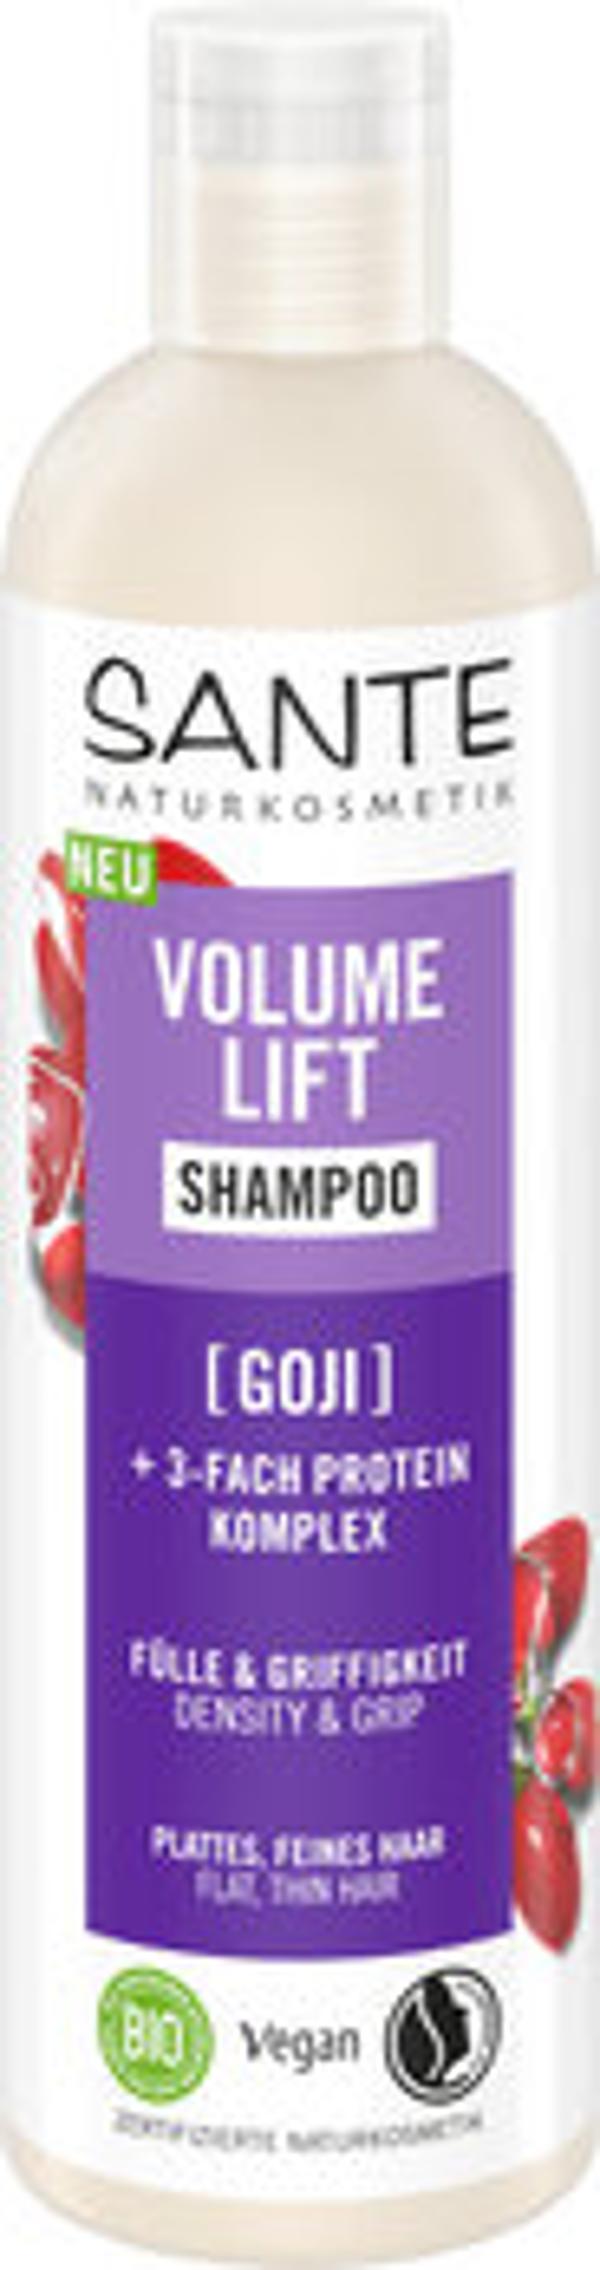 Produktfoto zu Volume Lift Shampoo Goji 250ml